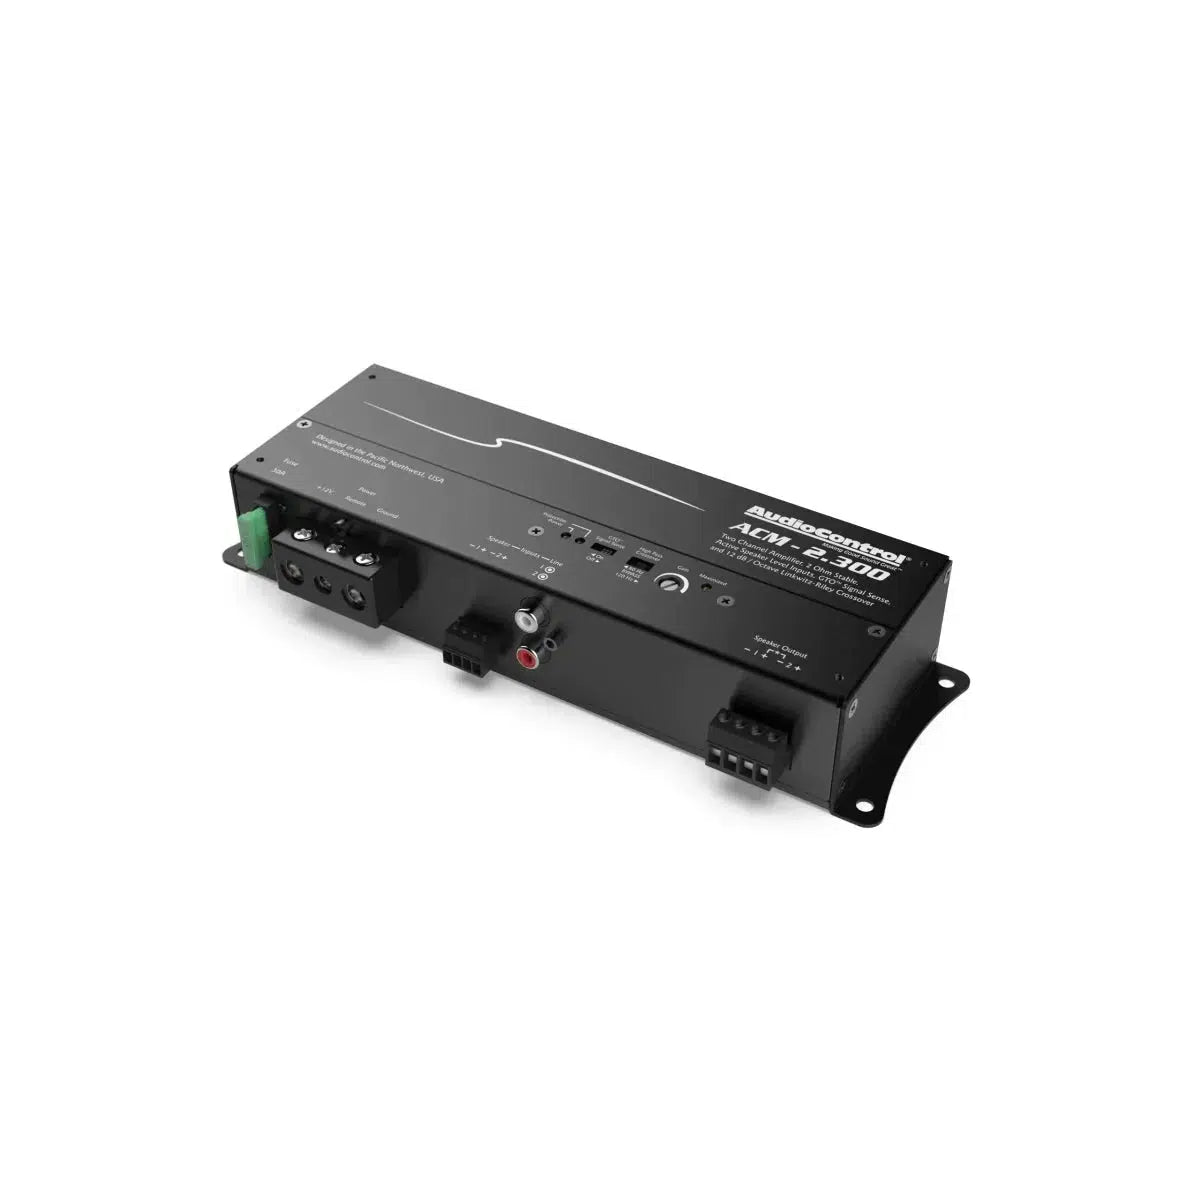 Audiocontrol-ACM-2.300-2-Channel Amplifier-Masori.de